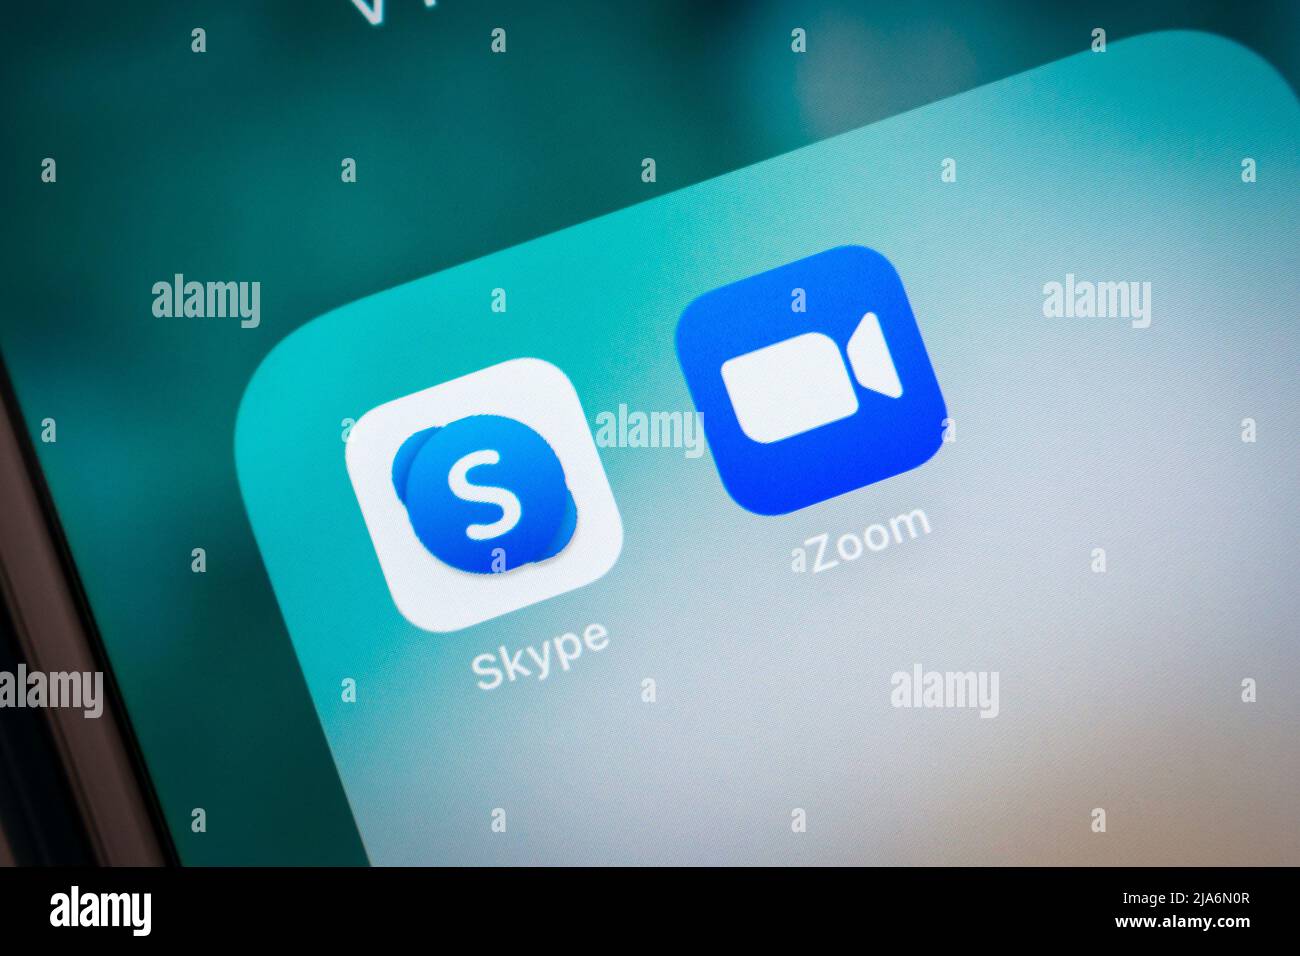 Kumamoto, Japan - Feb 16 2021 : Skype (Telekommunikations-App, die sich auf Video-Chat, Sprachanrufe und Instant Messaging spezialisiert hat) mit Zoom-App auf dem iPhone Stockfoto